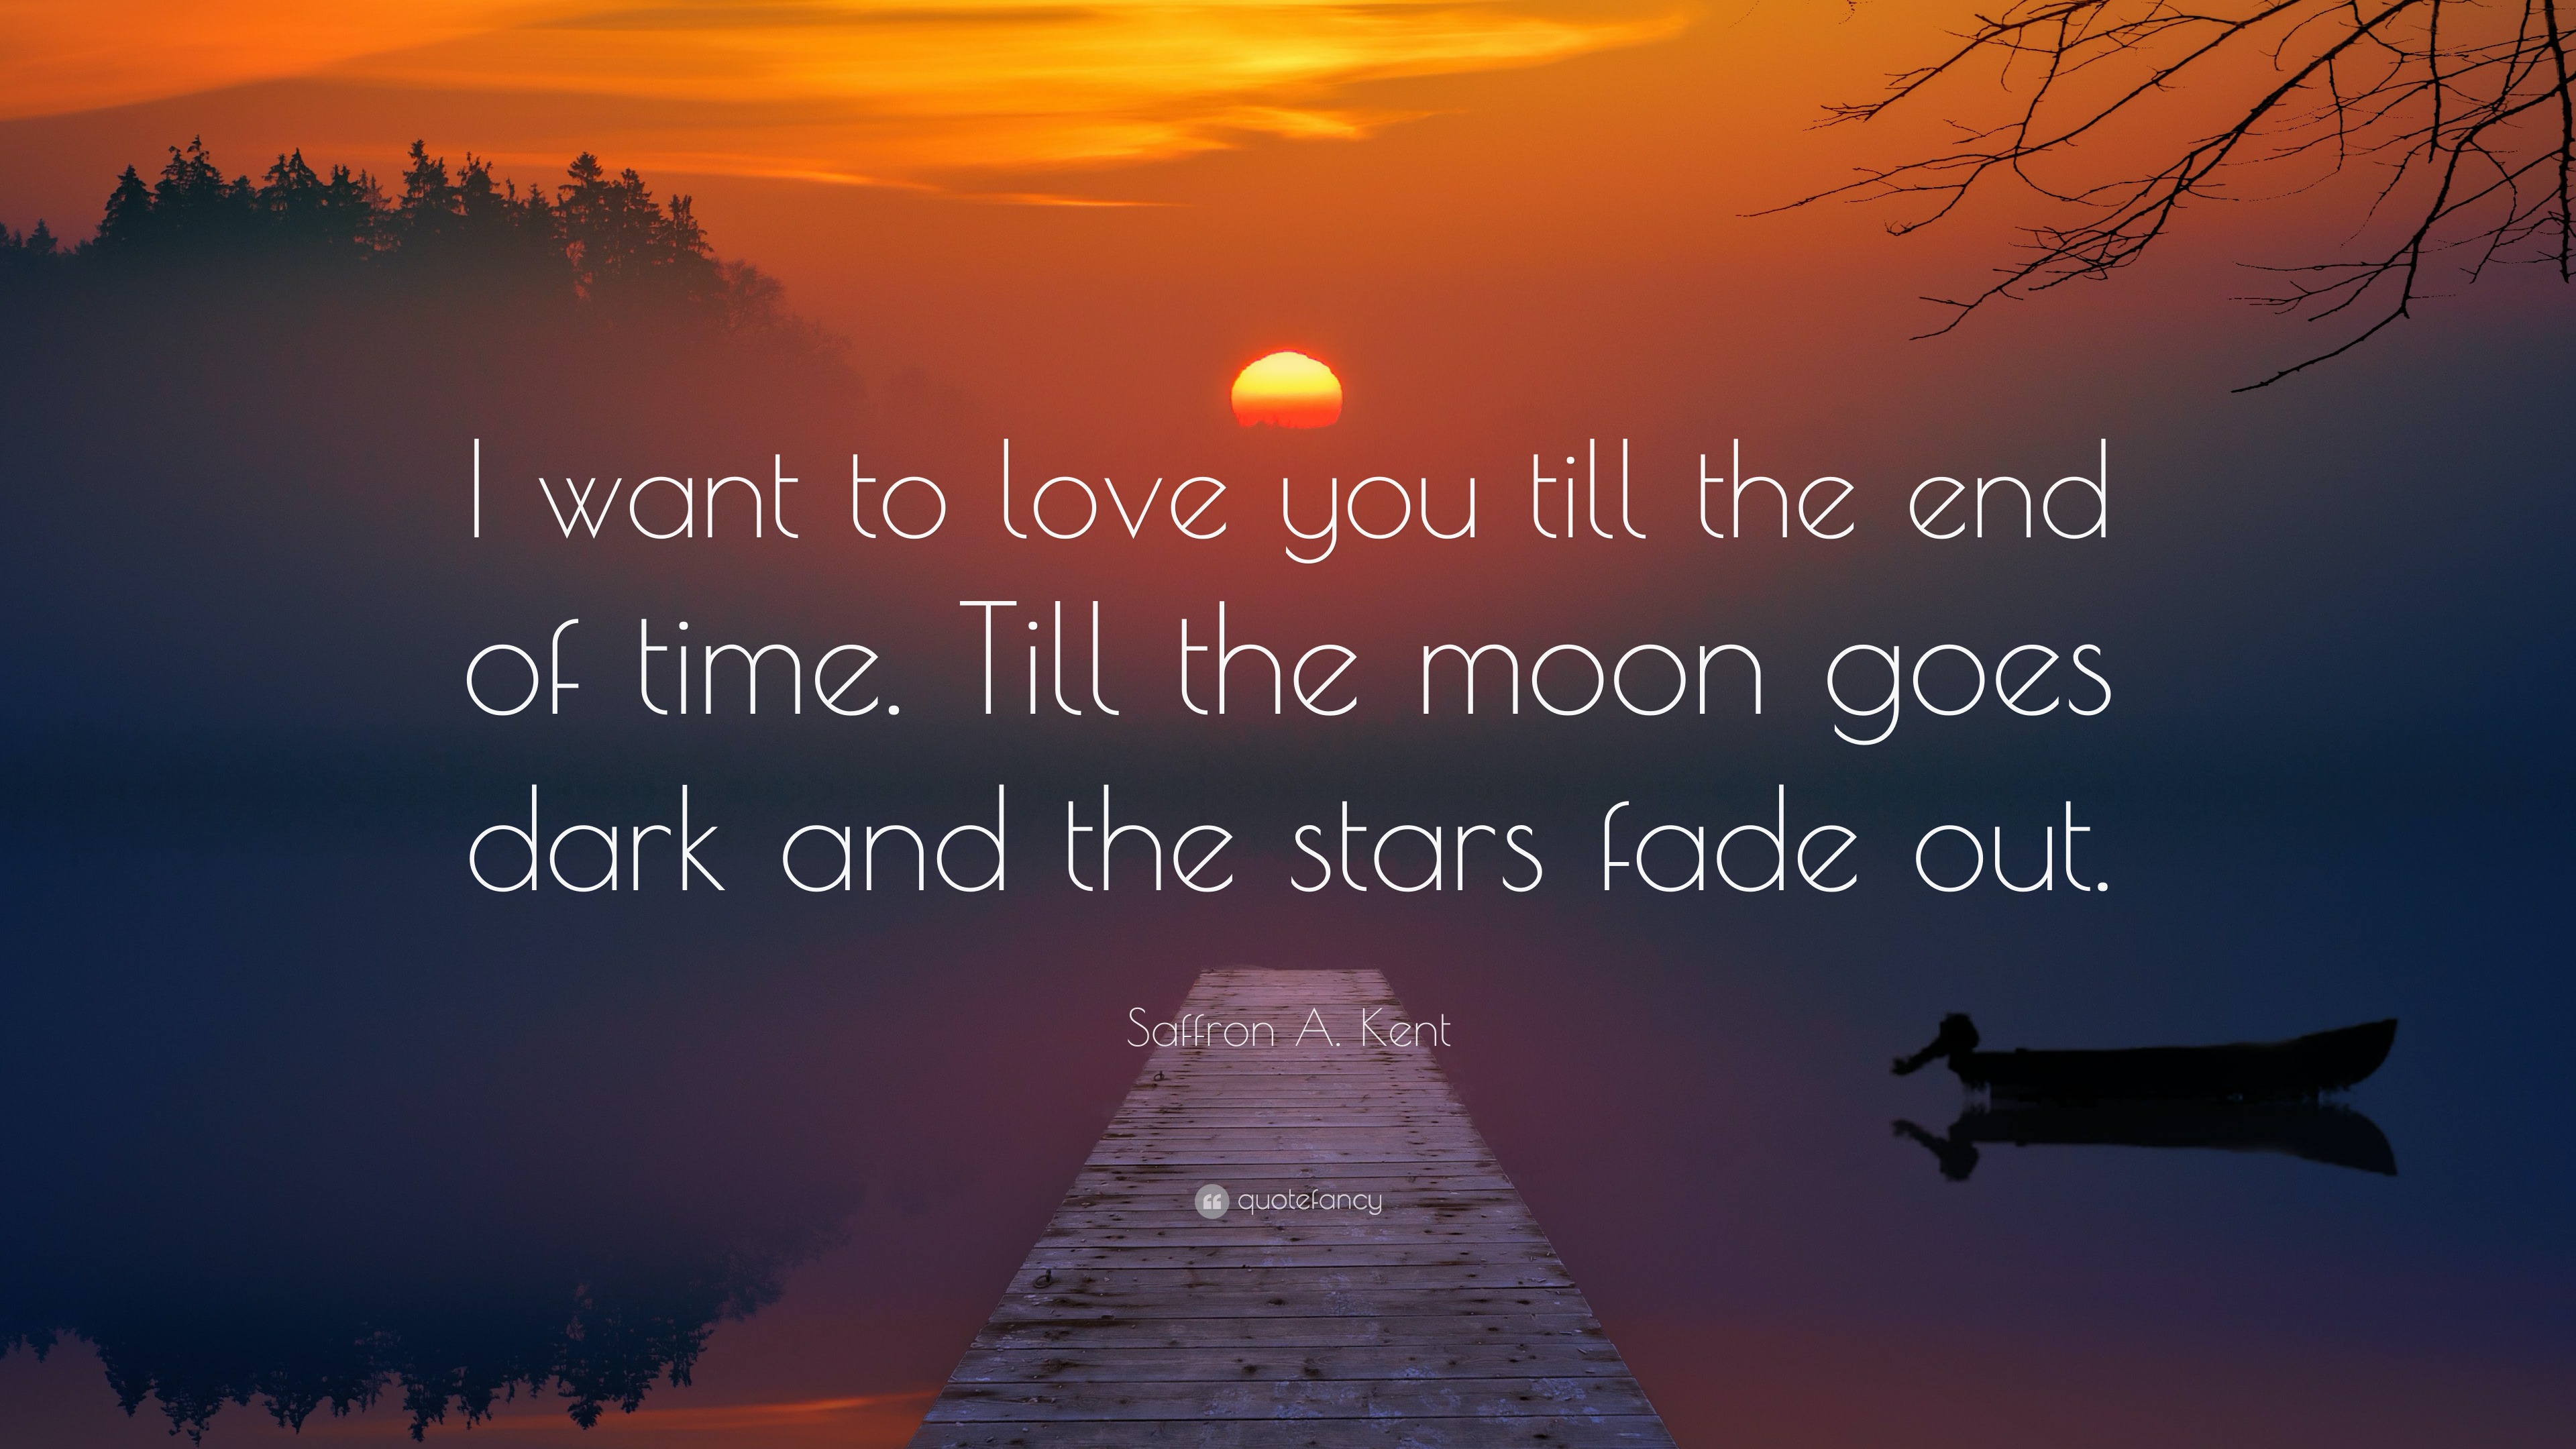 I Love You Until The End Saffron A. Kent Quote: “I want to love you till the end of time. Till the